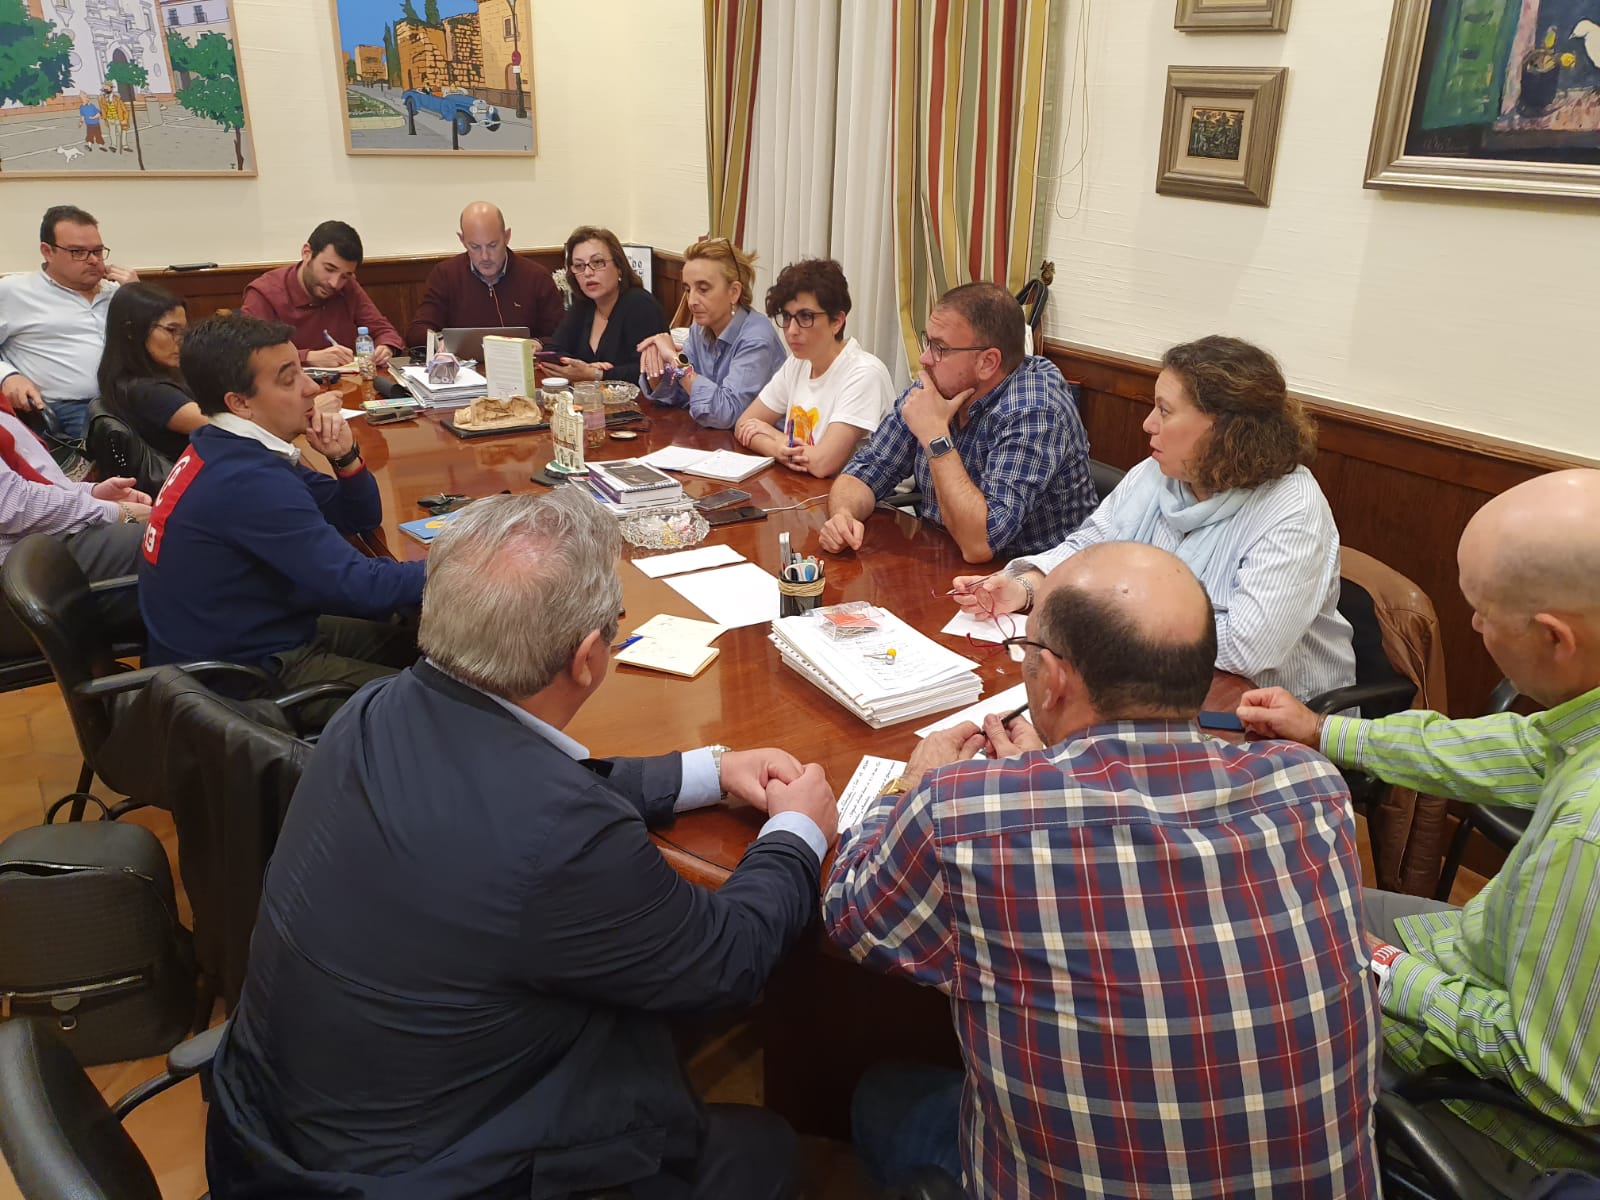 El ayuntamiento cerrará al público las instalaciones deportivas municipales, centros sociales y centros culturales desde el sábado siguiendo los criterios de la Junta de Extremadura